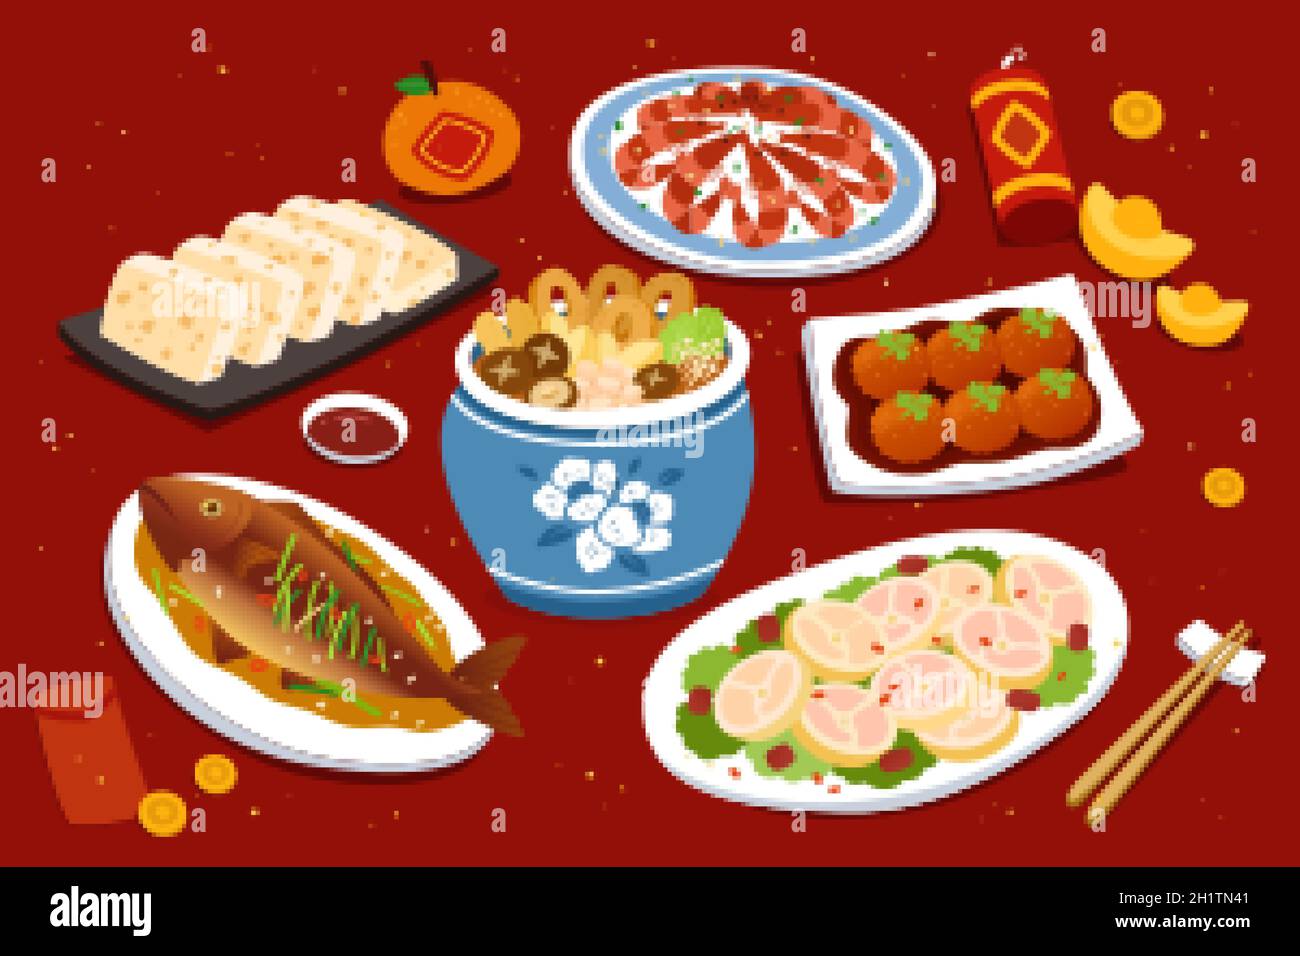 Dîner de réunion pour le nouvel an lunaire chinois, le festin avec une variété de plats de viande Illustration de Vecteur